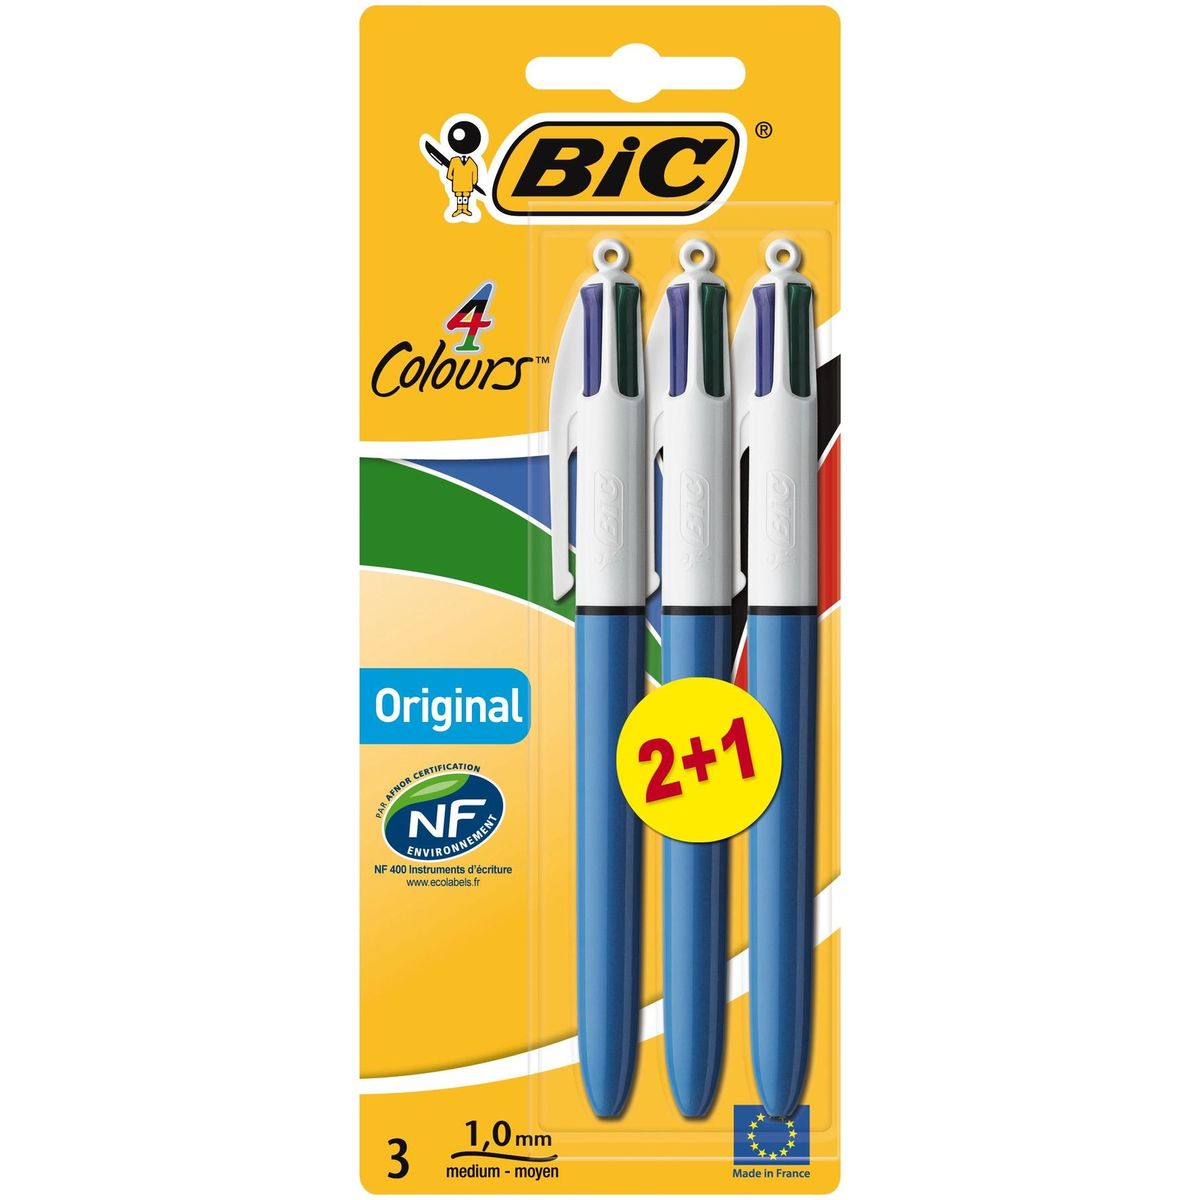 Bic 4 Colours Original stylo-bille rétractable 2 + 1